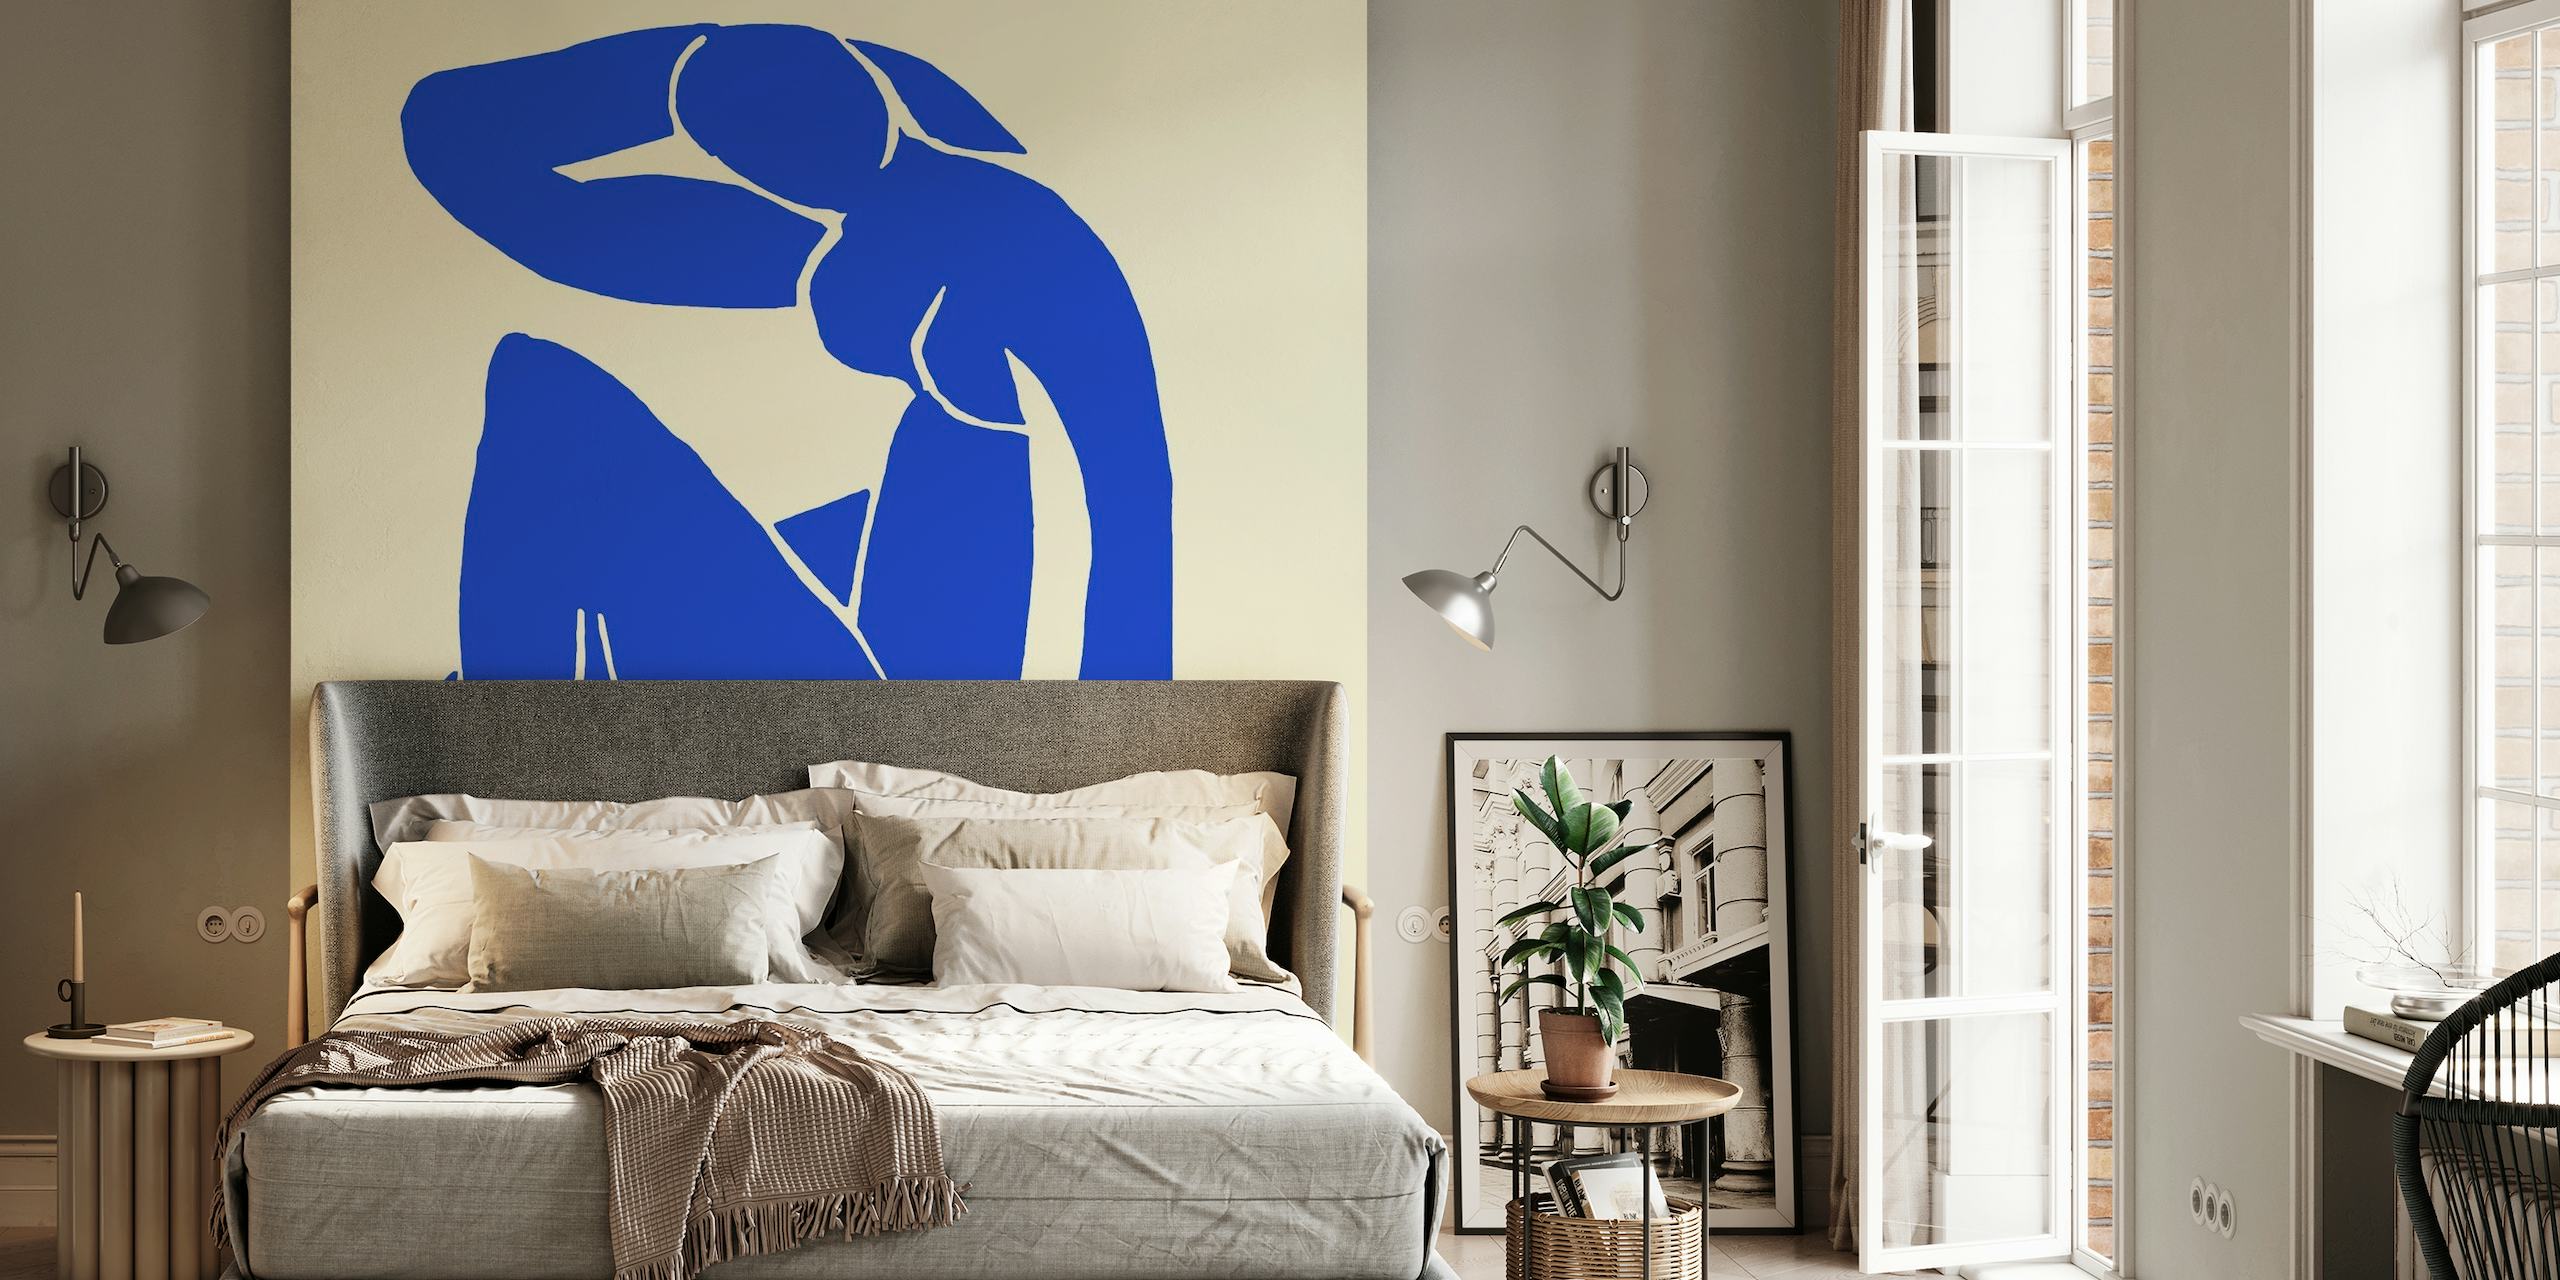 Mural apstraktne plave figure inspiriran Matisseovim umjetničkim stilom